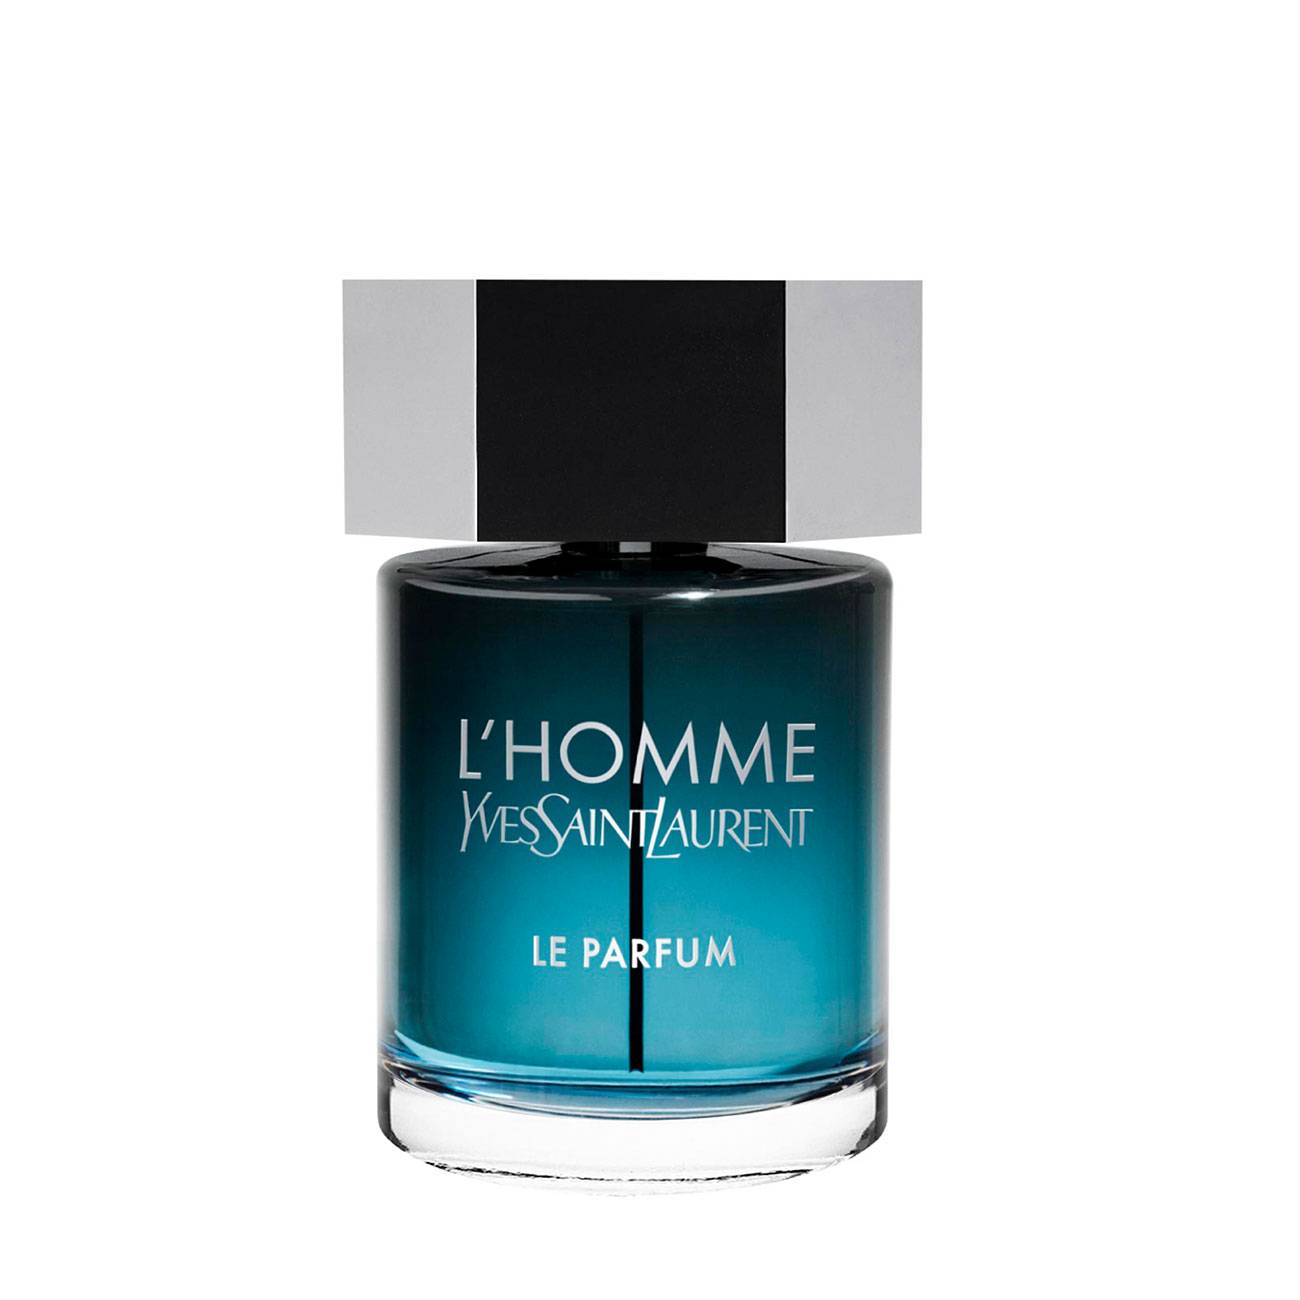 Apa de Parfum Yves Saint Laurent L'HOMME LE PARFUM 60ml cu comanda online